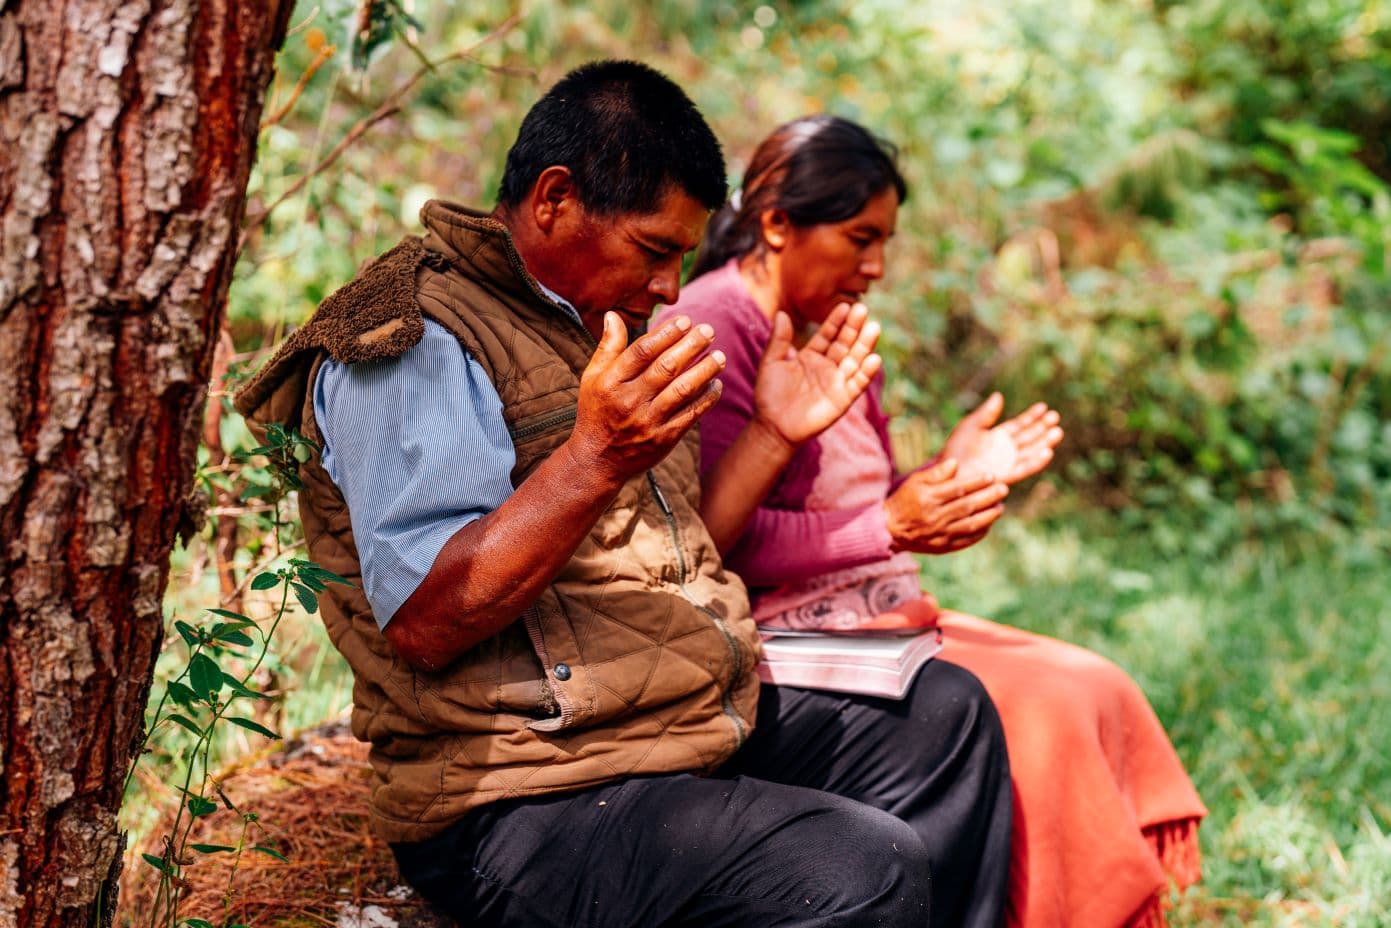 Mies ja nainen rukoilevat ulkona.